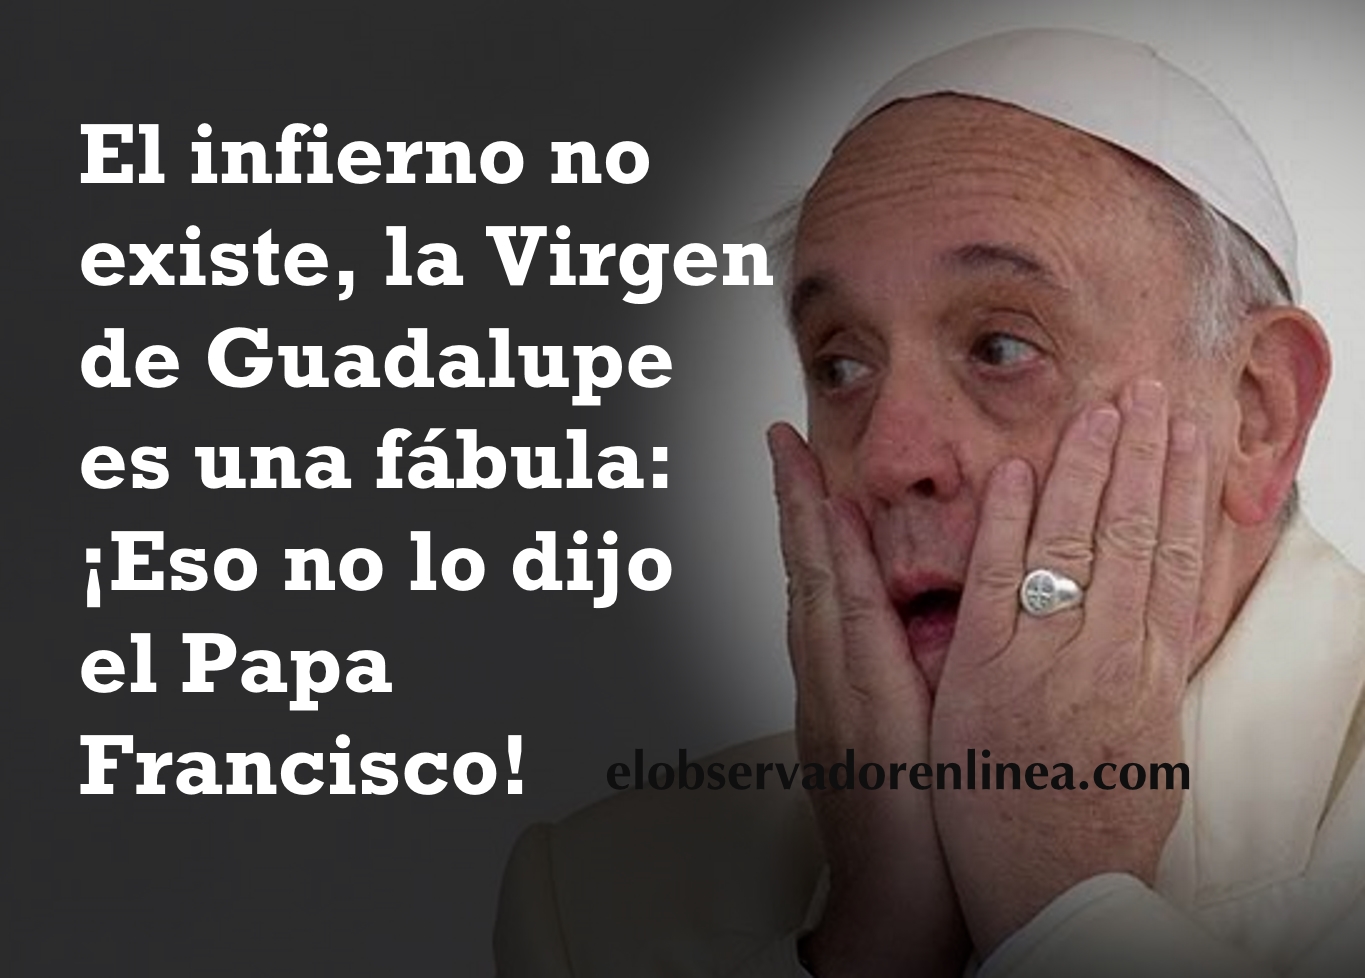 ¡Eso no lo dijo el Papa Francisco!